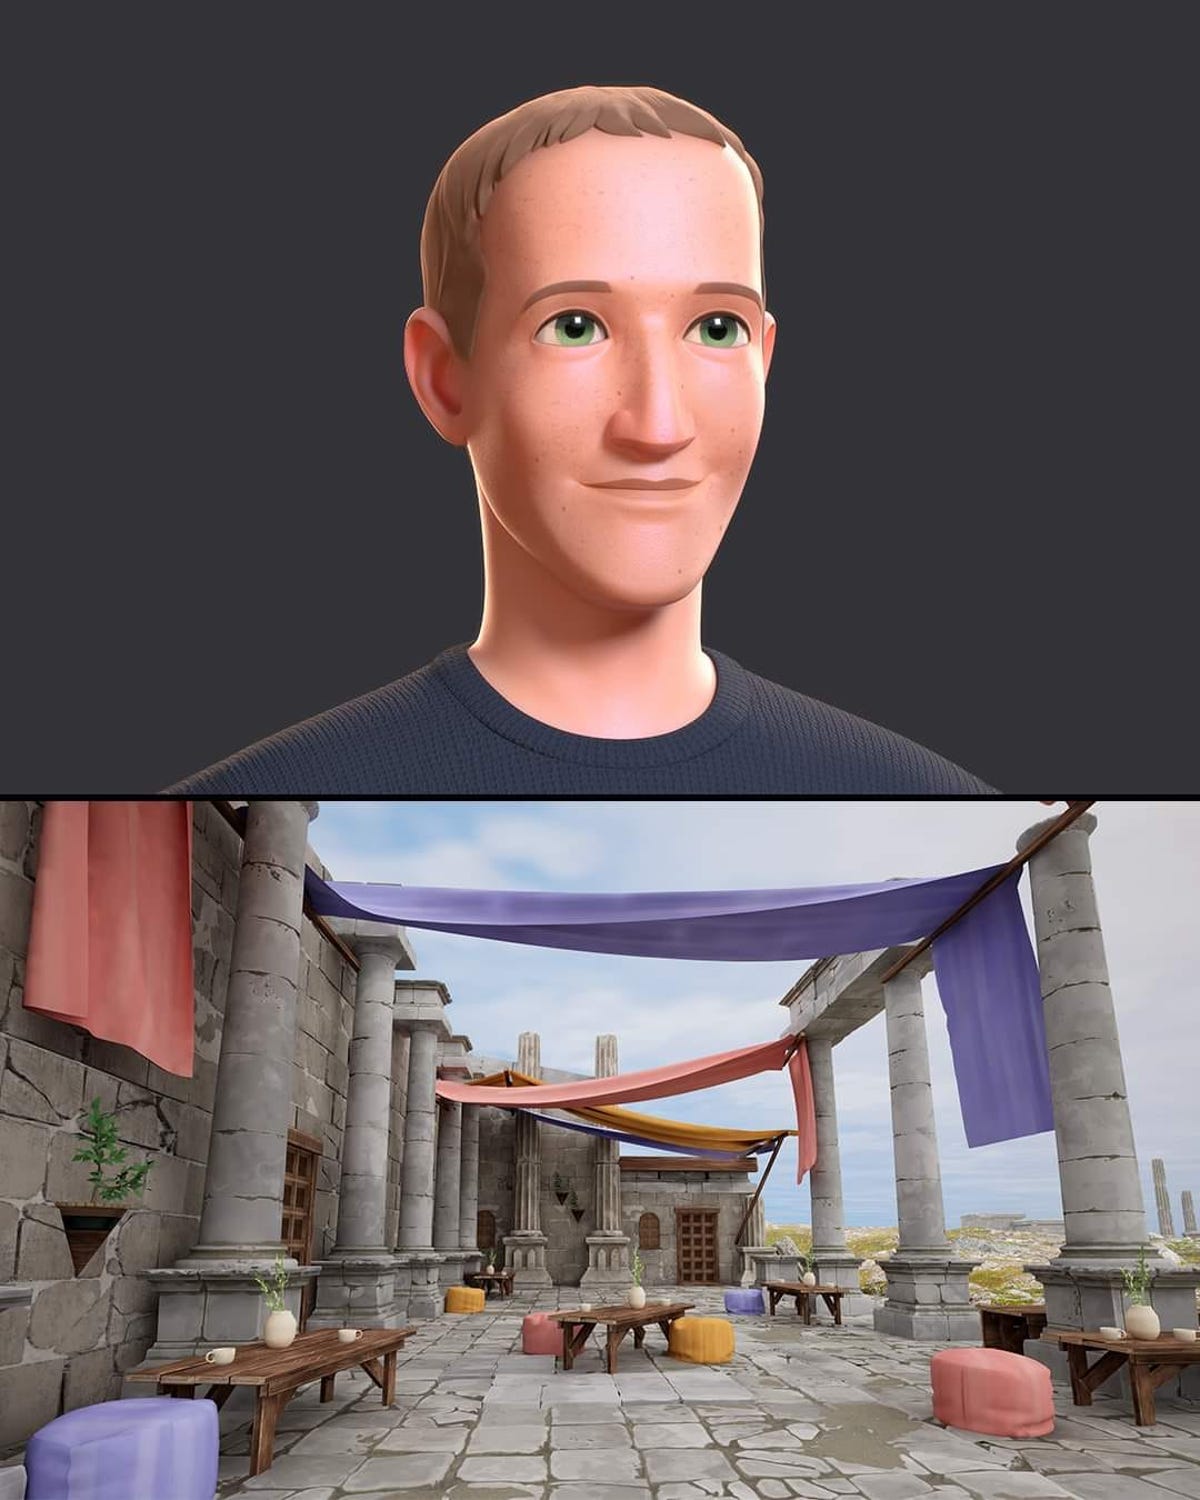 Mark Zuckerberg avatar in VR